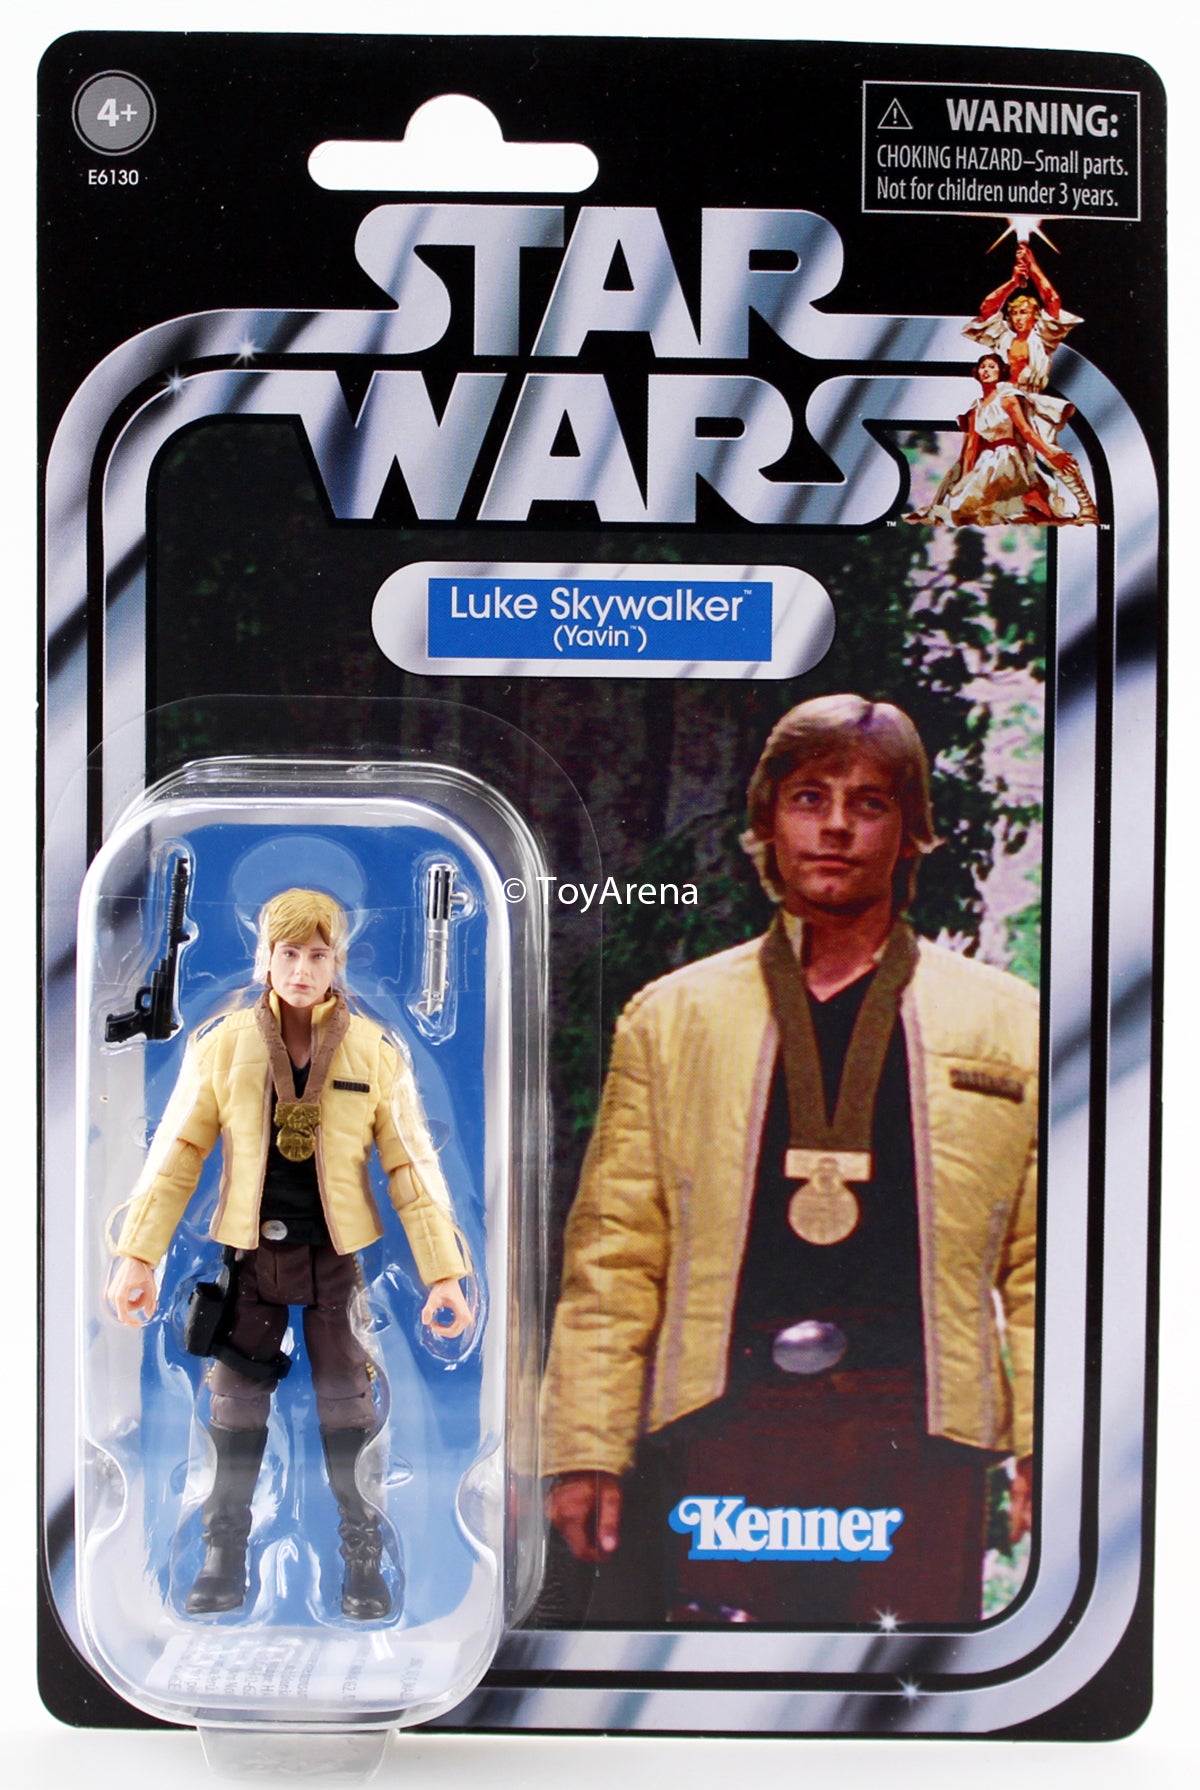 Star Wars Vintage Collection Luke Skywalker Yavin VC151 3.75" Action Figure